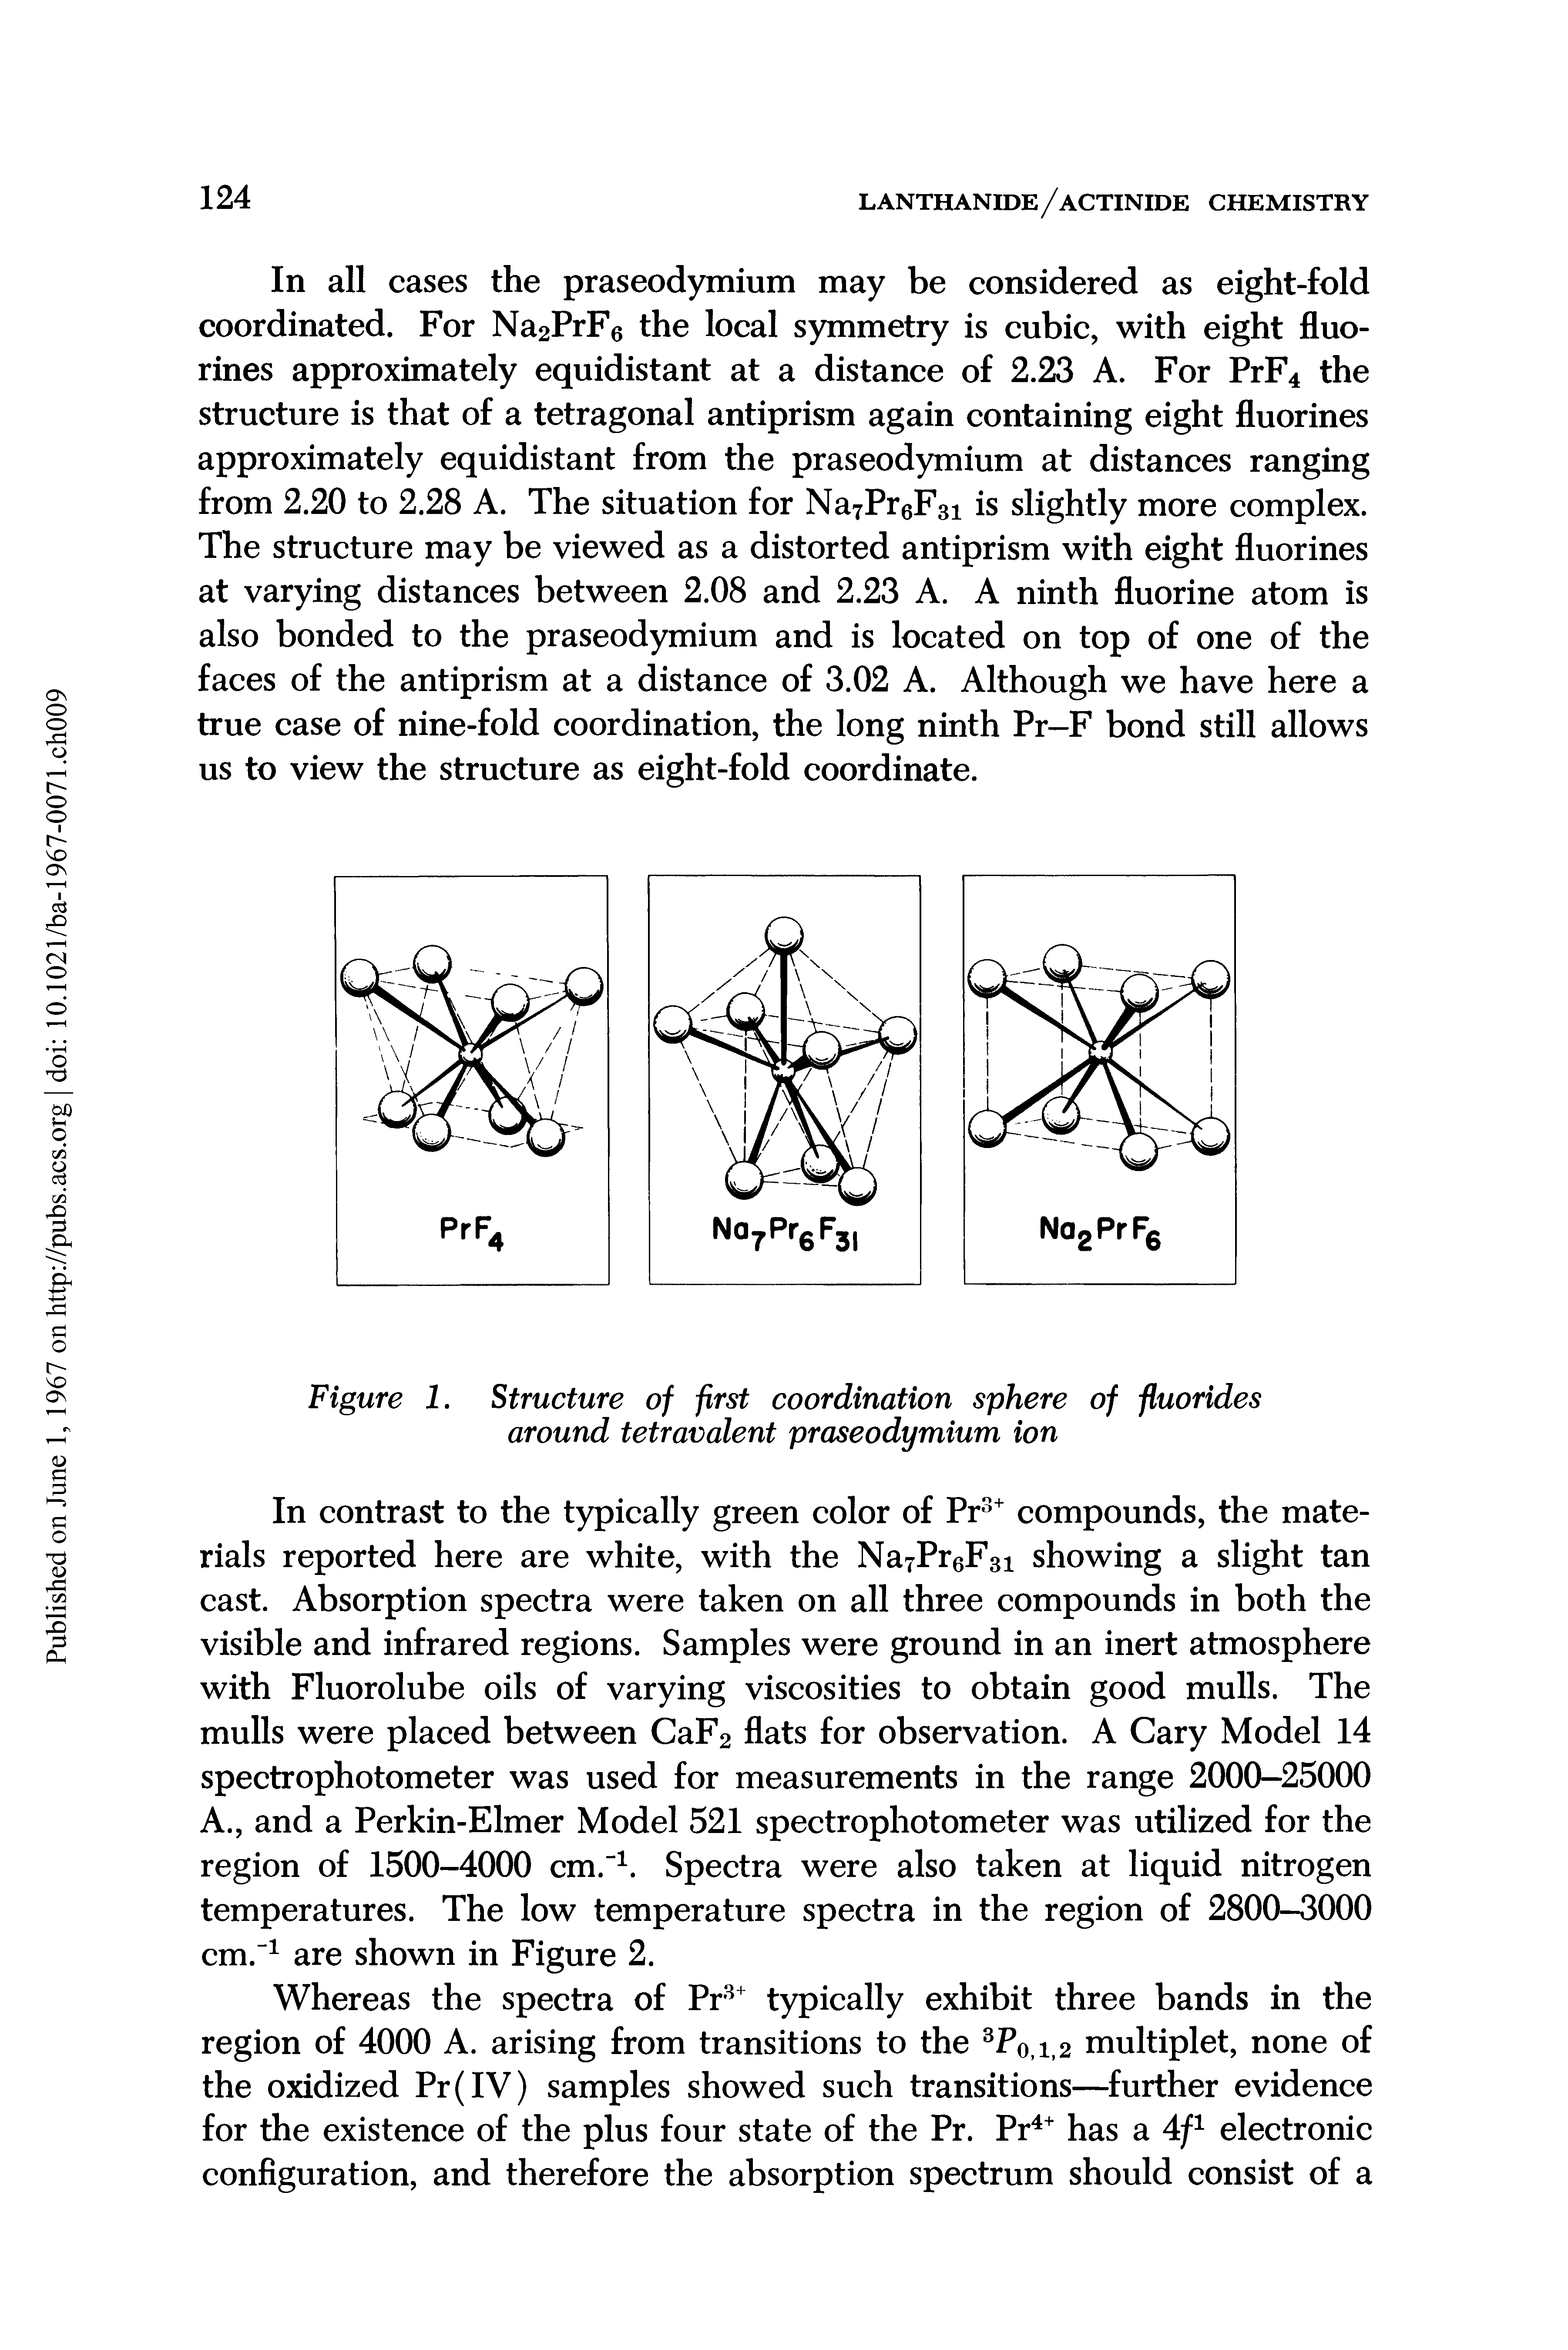 Figure 1. Structure of first coordination sphere of fluorides around tetravalent praseodymium ion...